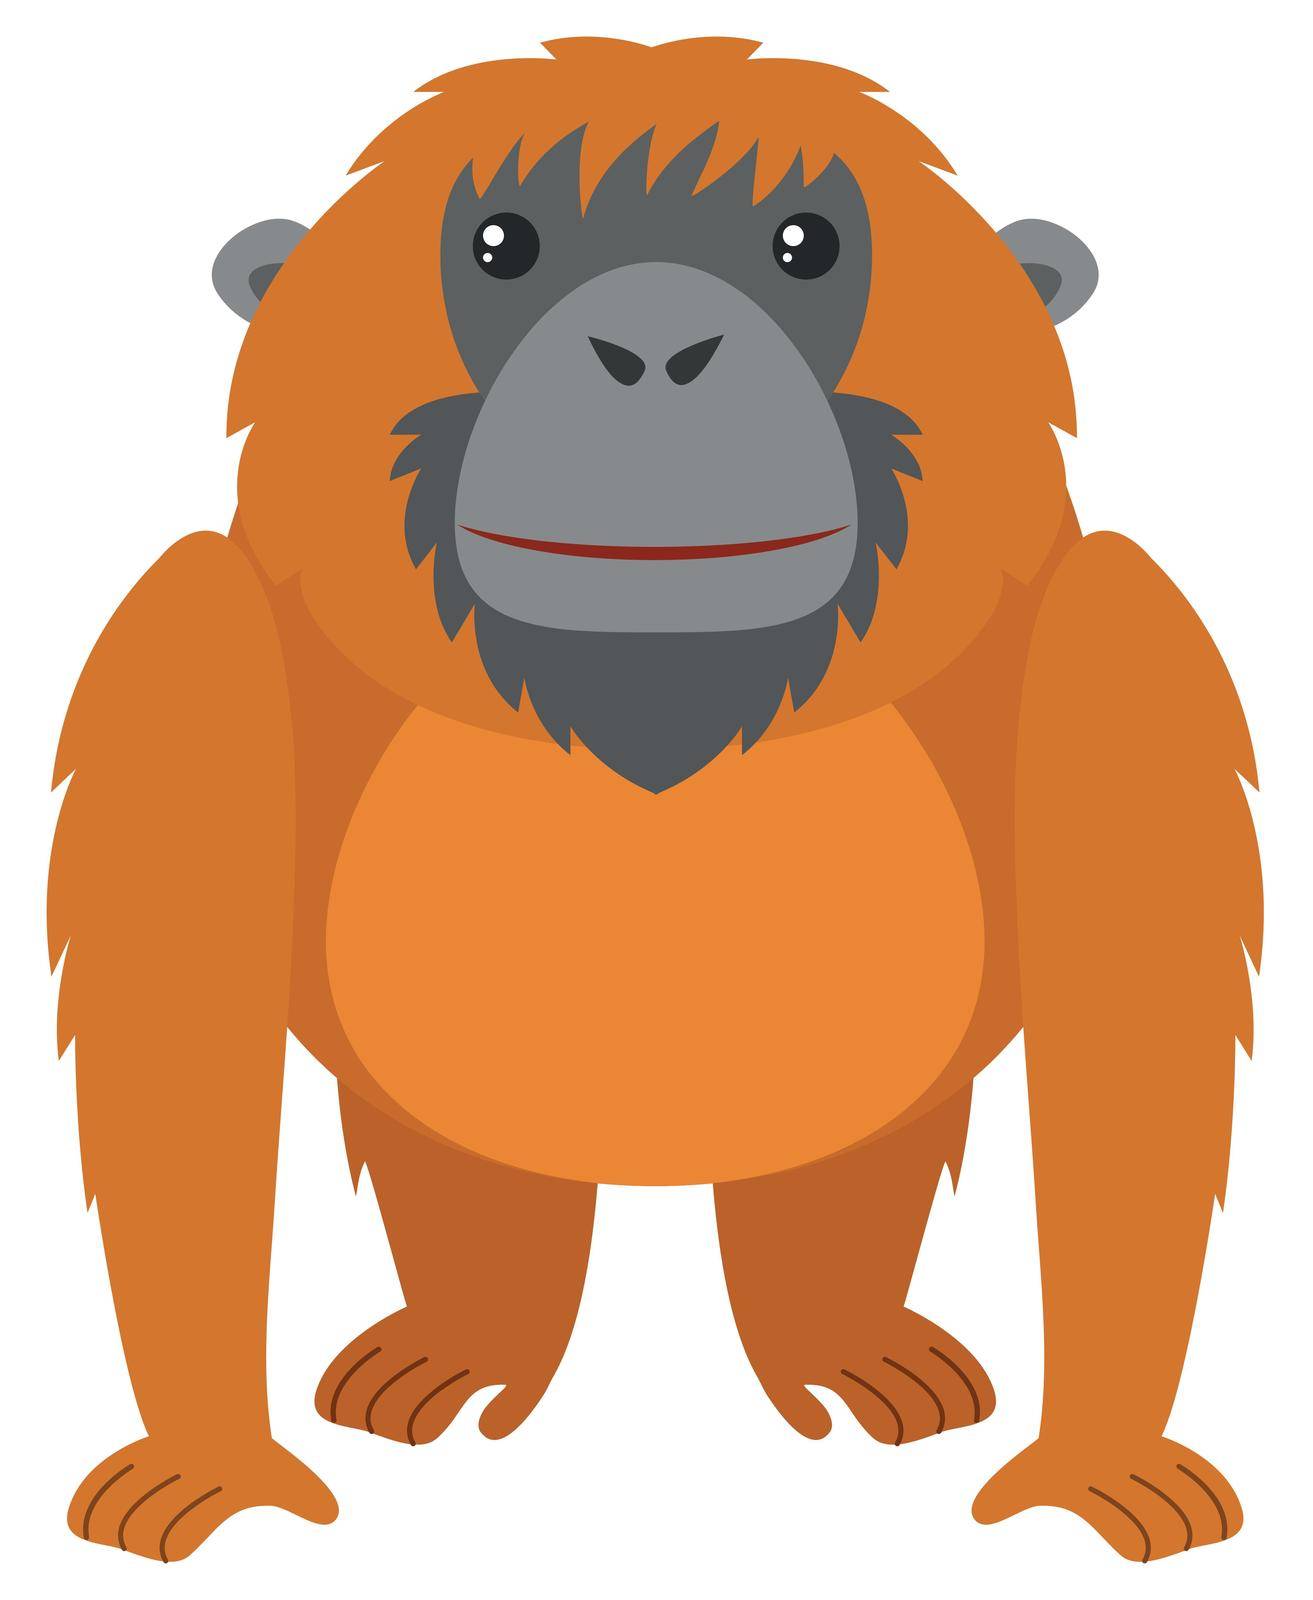 Orangutan with brown fur by iimages